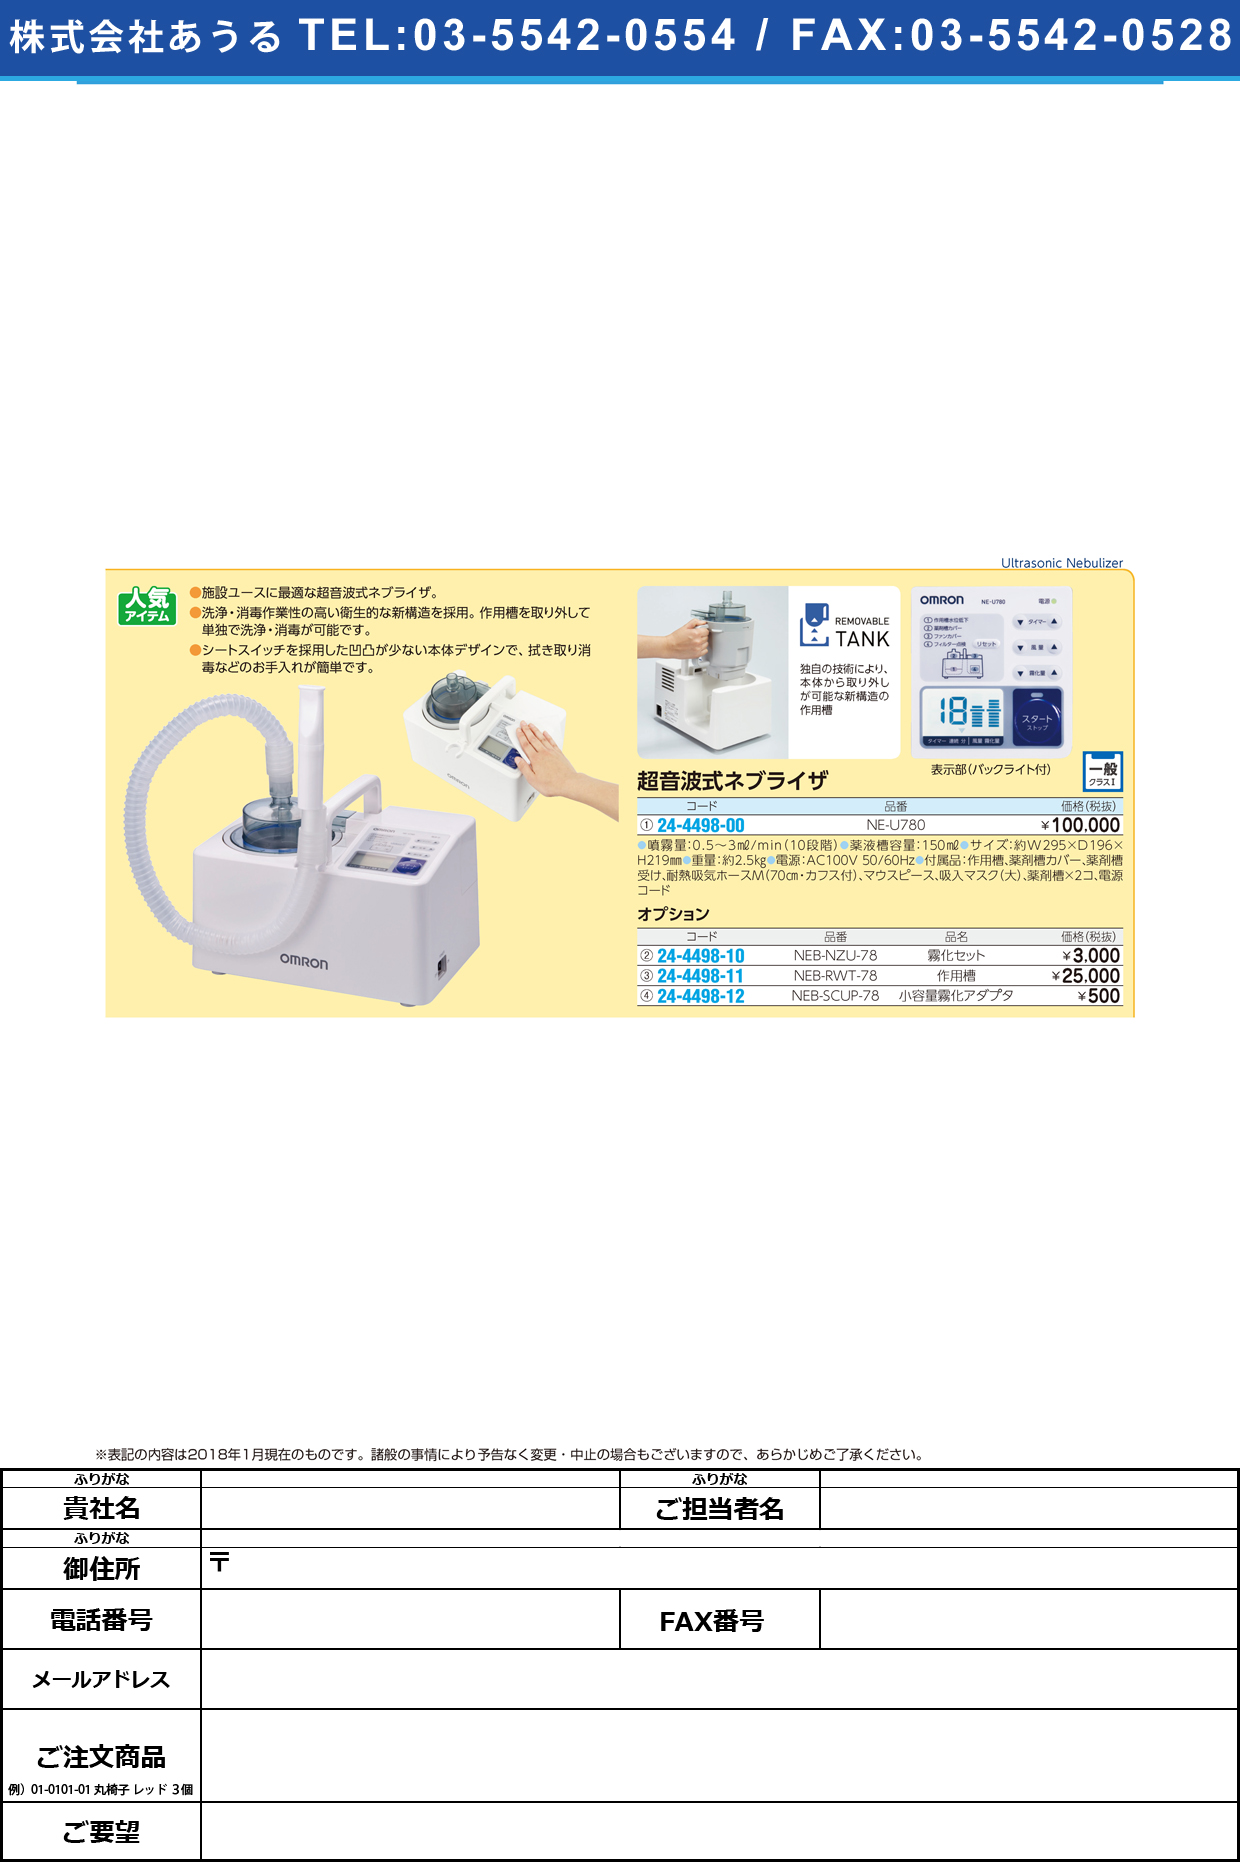 (24-4498-00)超音波式ネブライザ NE-U780 ﾁｮｳｵﾝﾊﾟｼｷﾈﾌﾞﾗｲｻﾞ(フクダコーリン)【1台単位】【2018年カタログ商品】